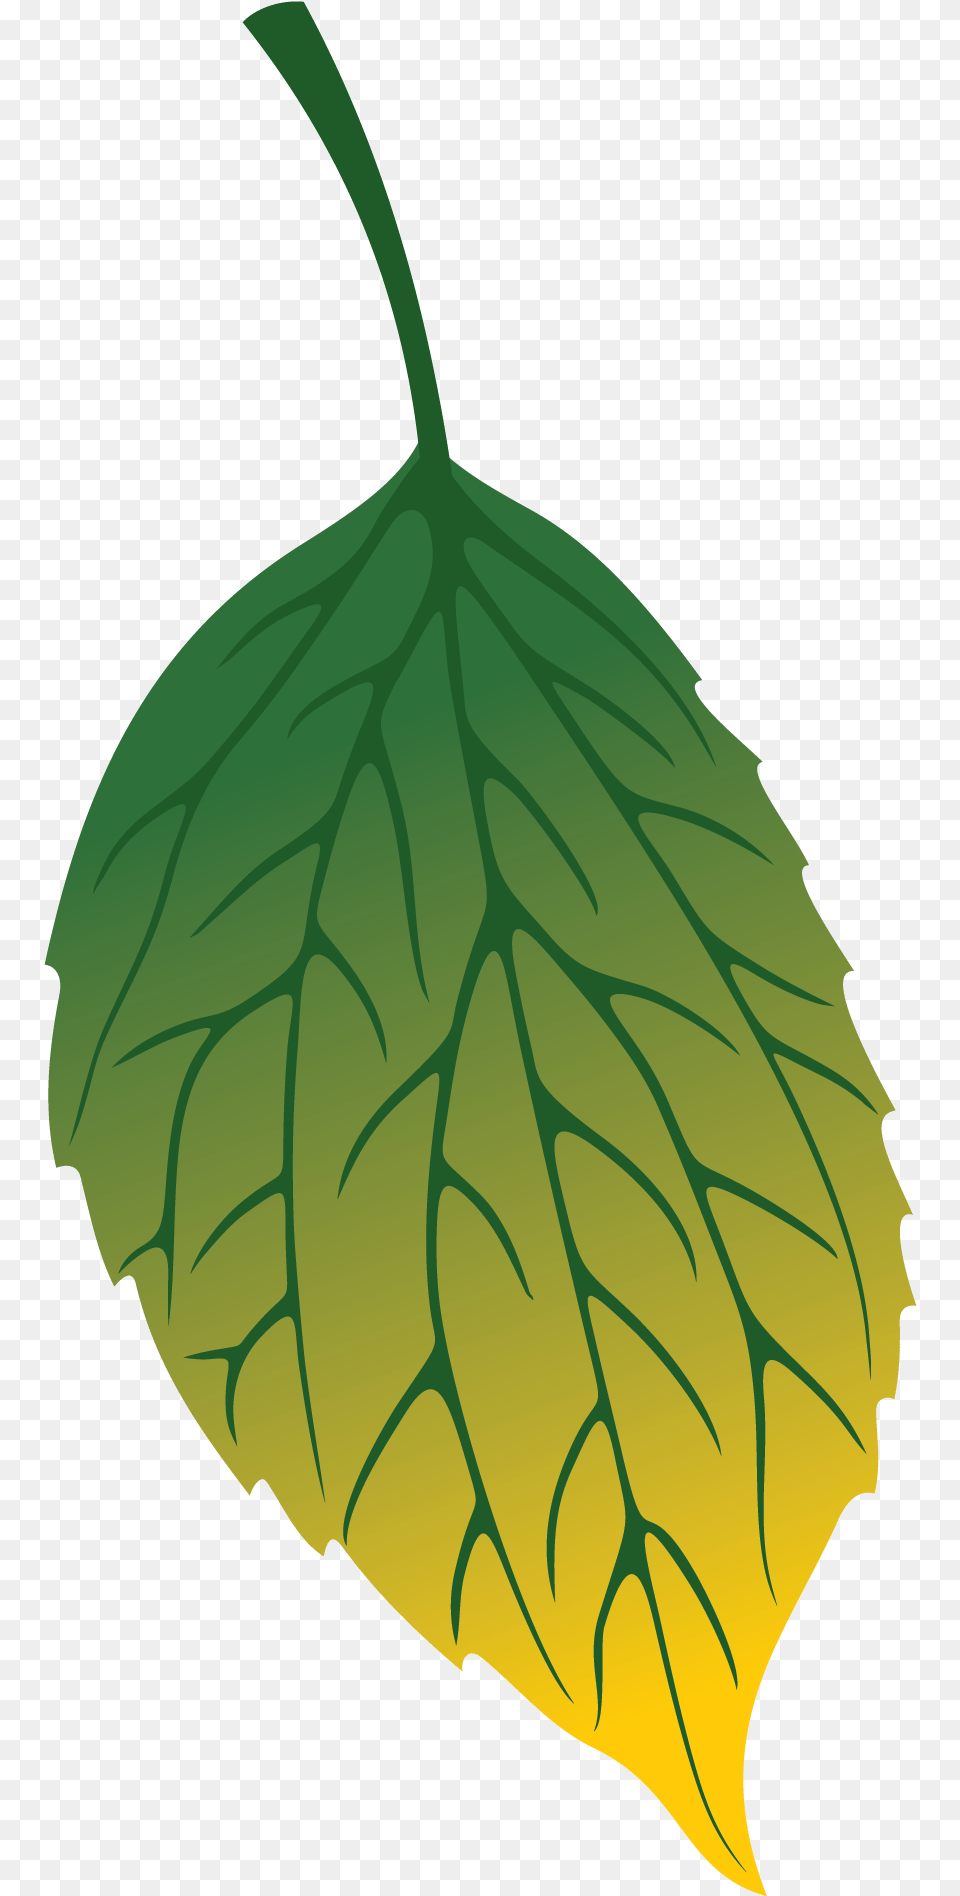 Illustration, Leaf, Plant, Tree, Oak Png Image